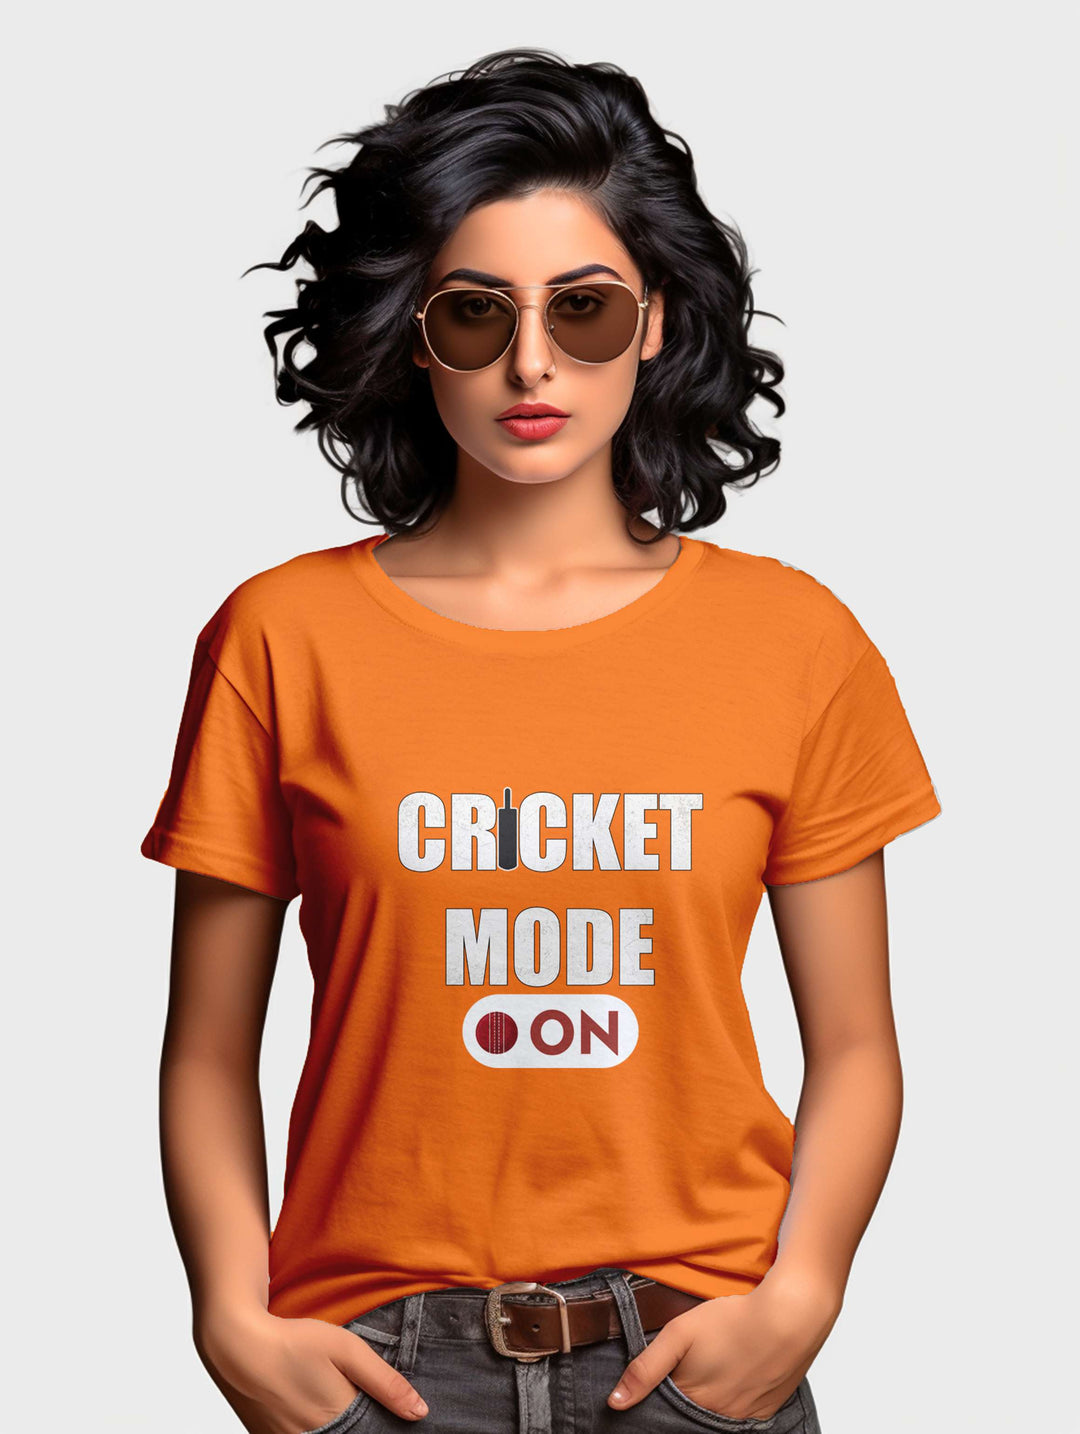 Women's Cricket Mode On tee